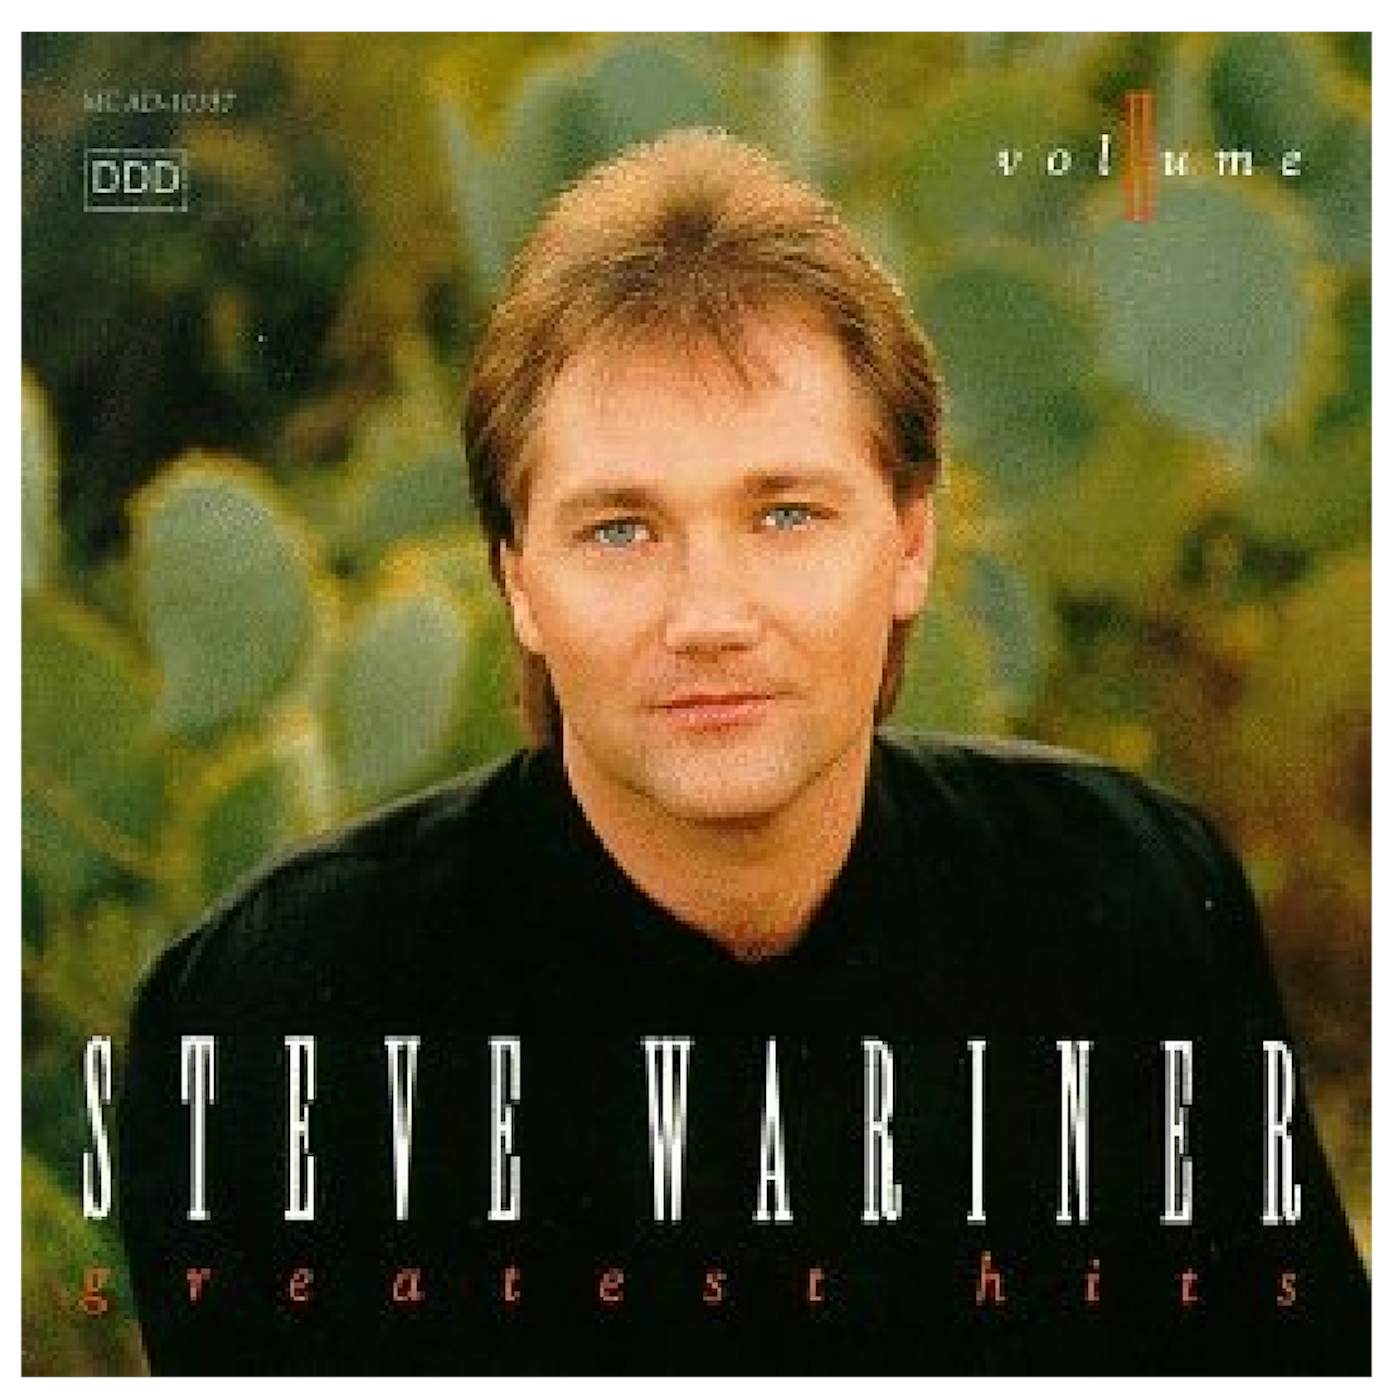 Steve Wariner CD- Greatest Hits II